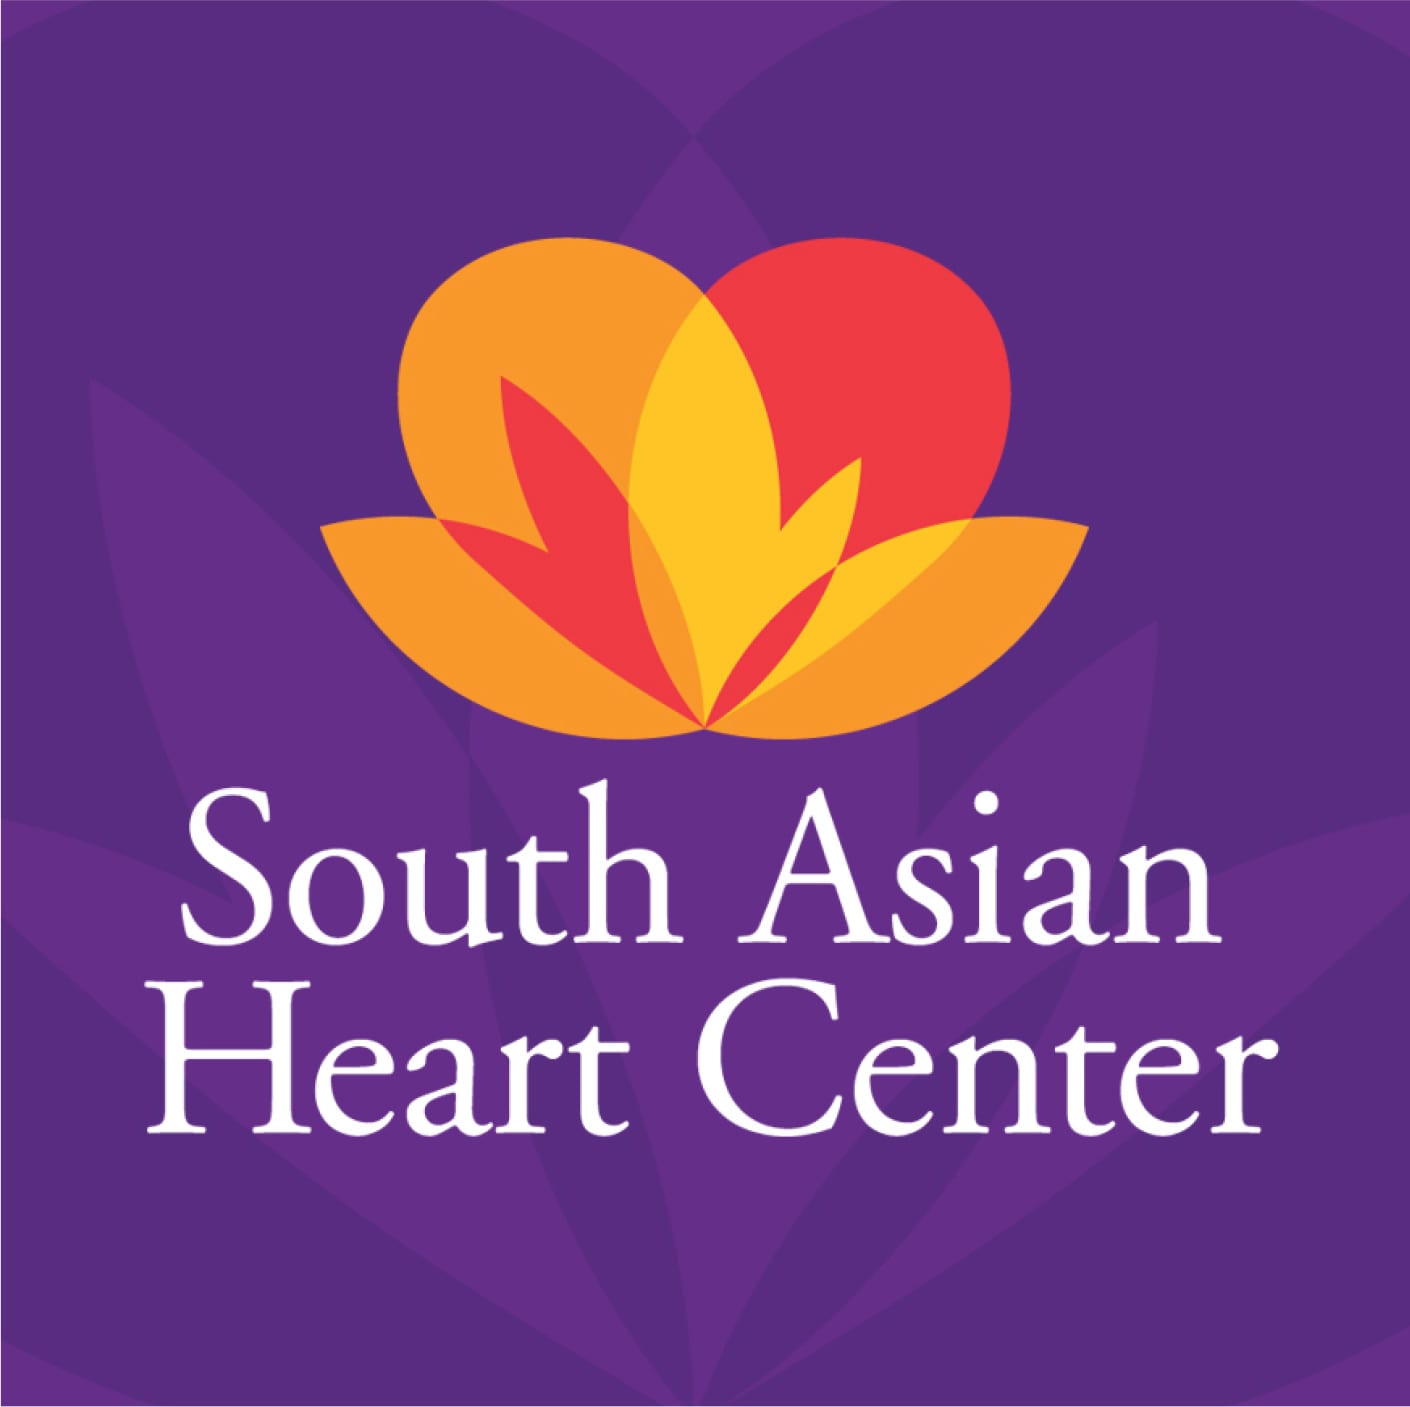 BergmanCramer | South Asian Heart Center